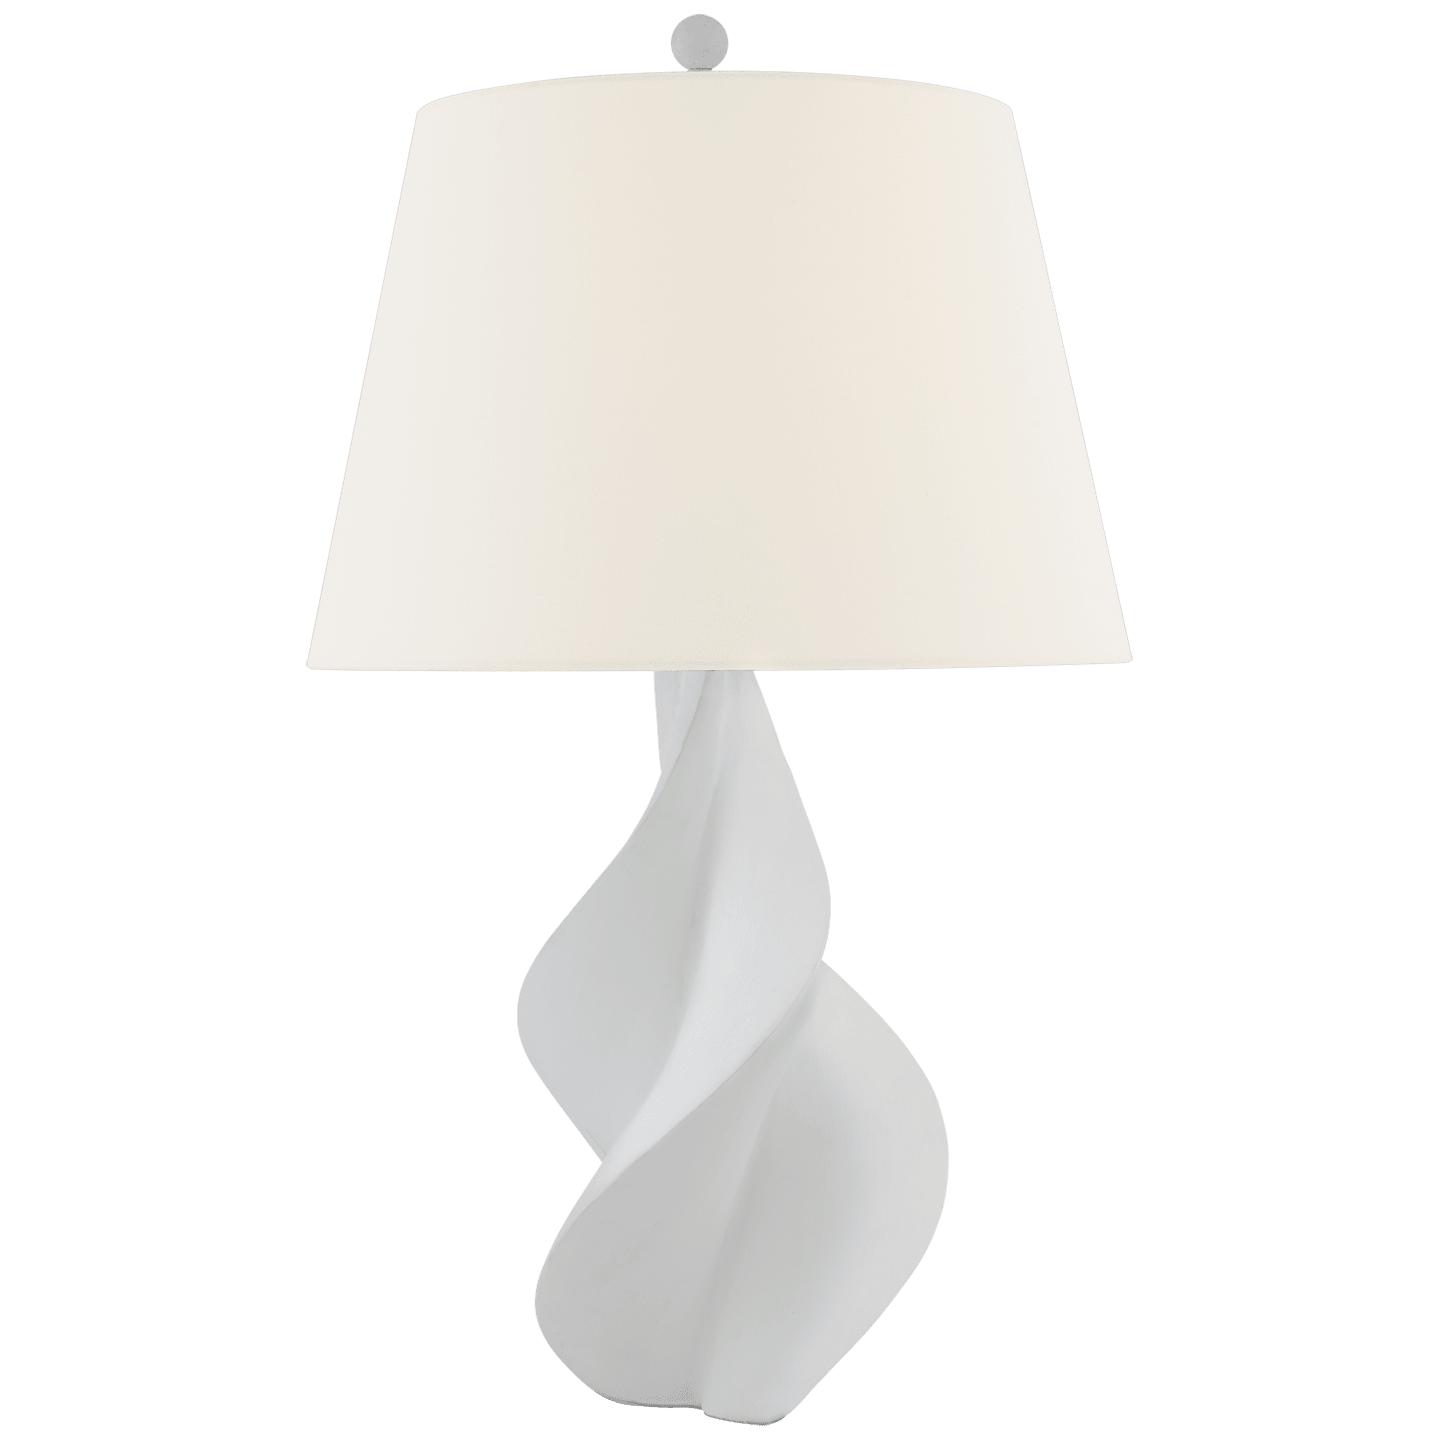 Купить Настольная лампа Cordoba Large Table Lamp в интернет-магазине roooms.ru